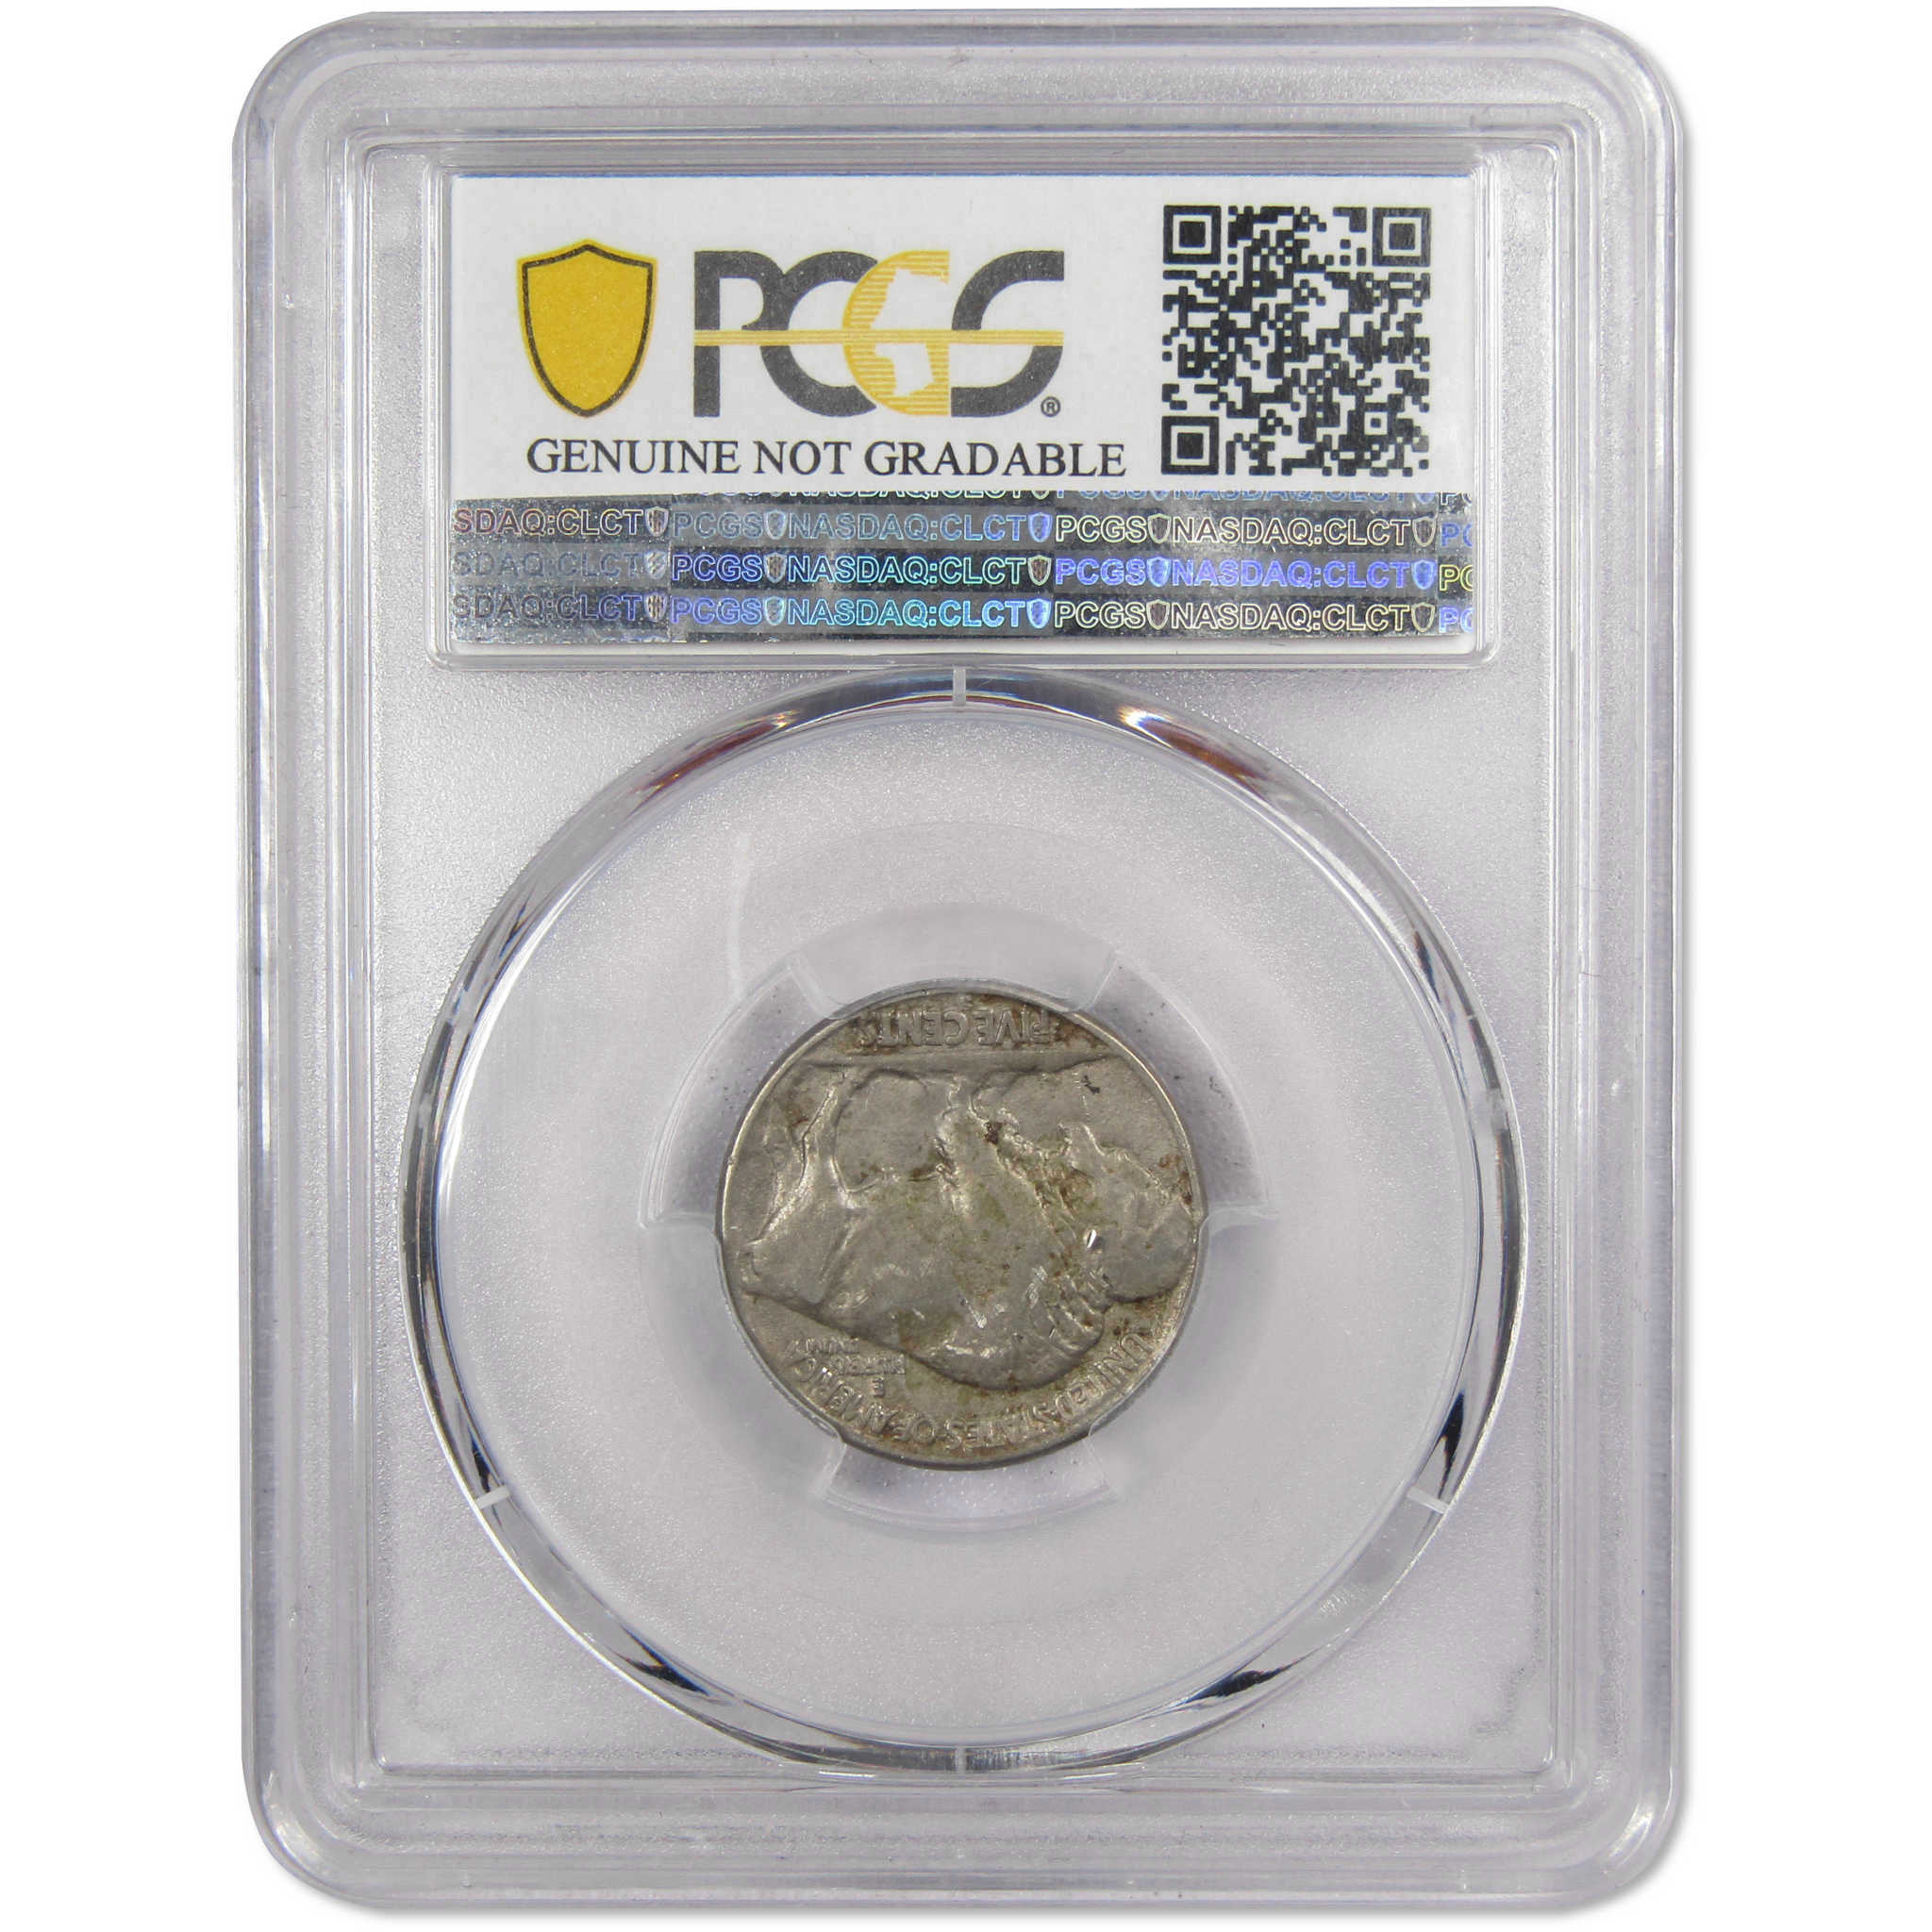 1924 S Indian Head Buffalo Nickel XF Details PCGS SKU:IPC7371